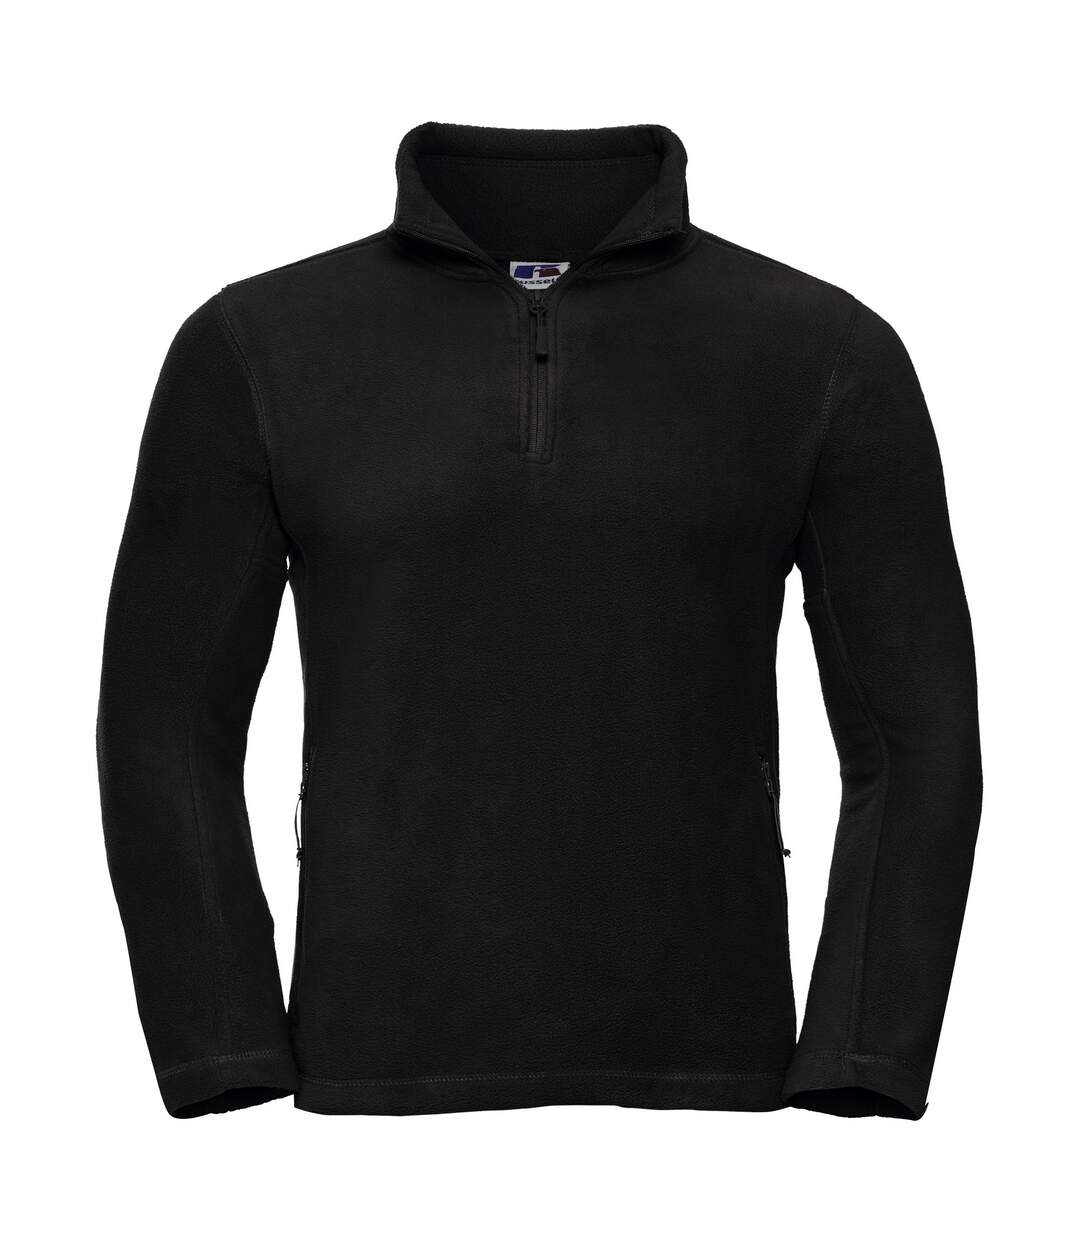 Russell Mens 1/4 Zip Outdoor Fleece Top (Black) - UTBC1438